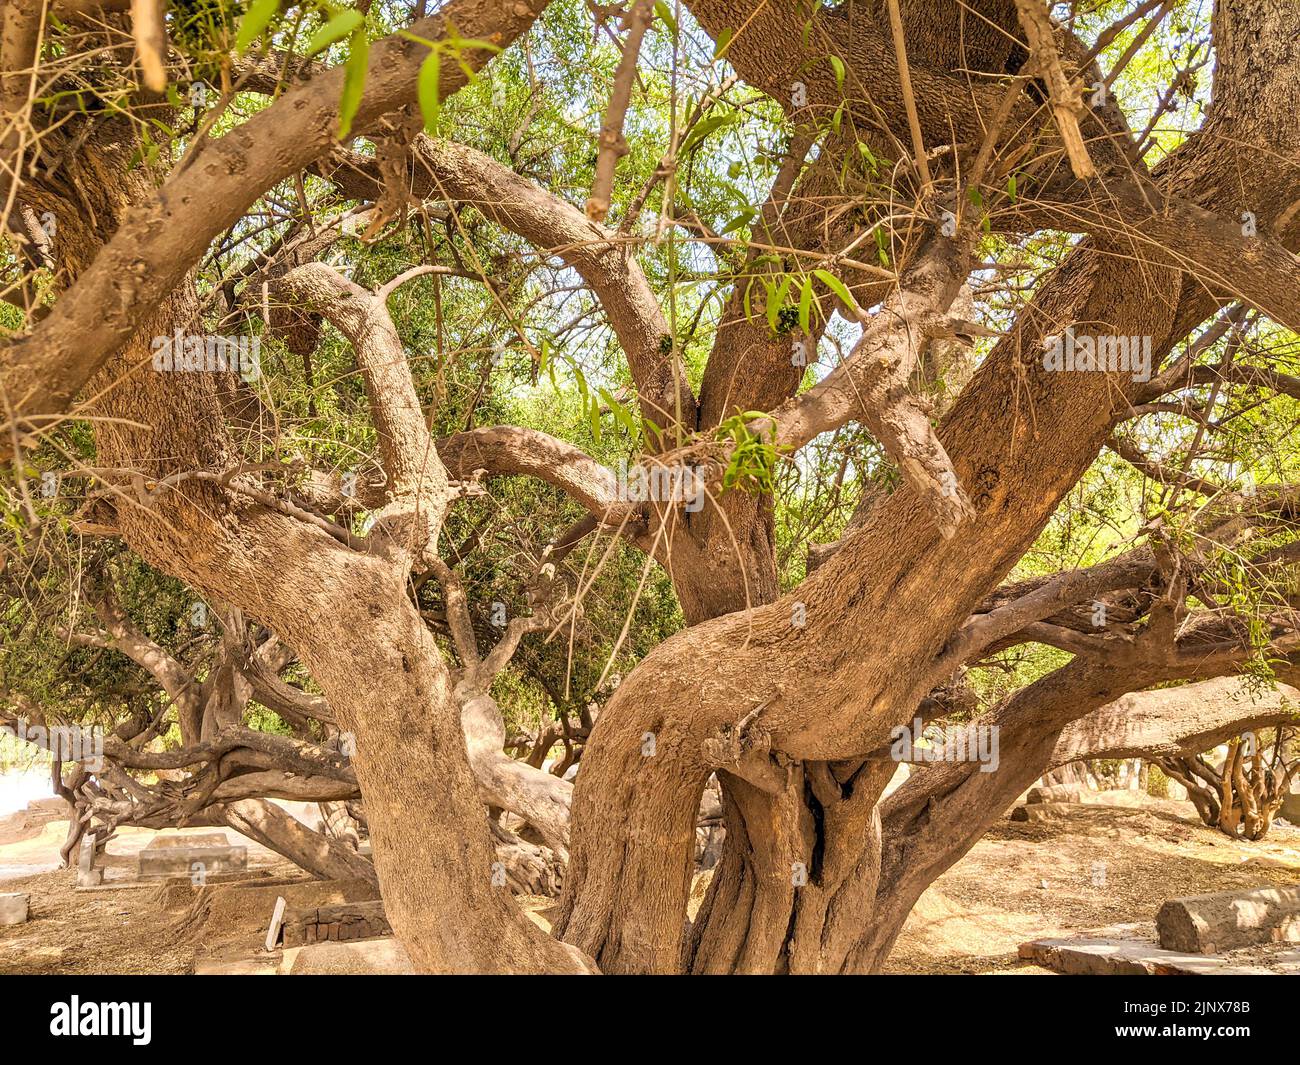 Salvadora persica également connu sous le nom d'arbre Peelu dans le désert Banque D'Images